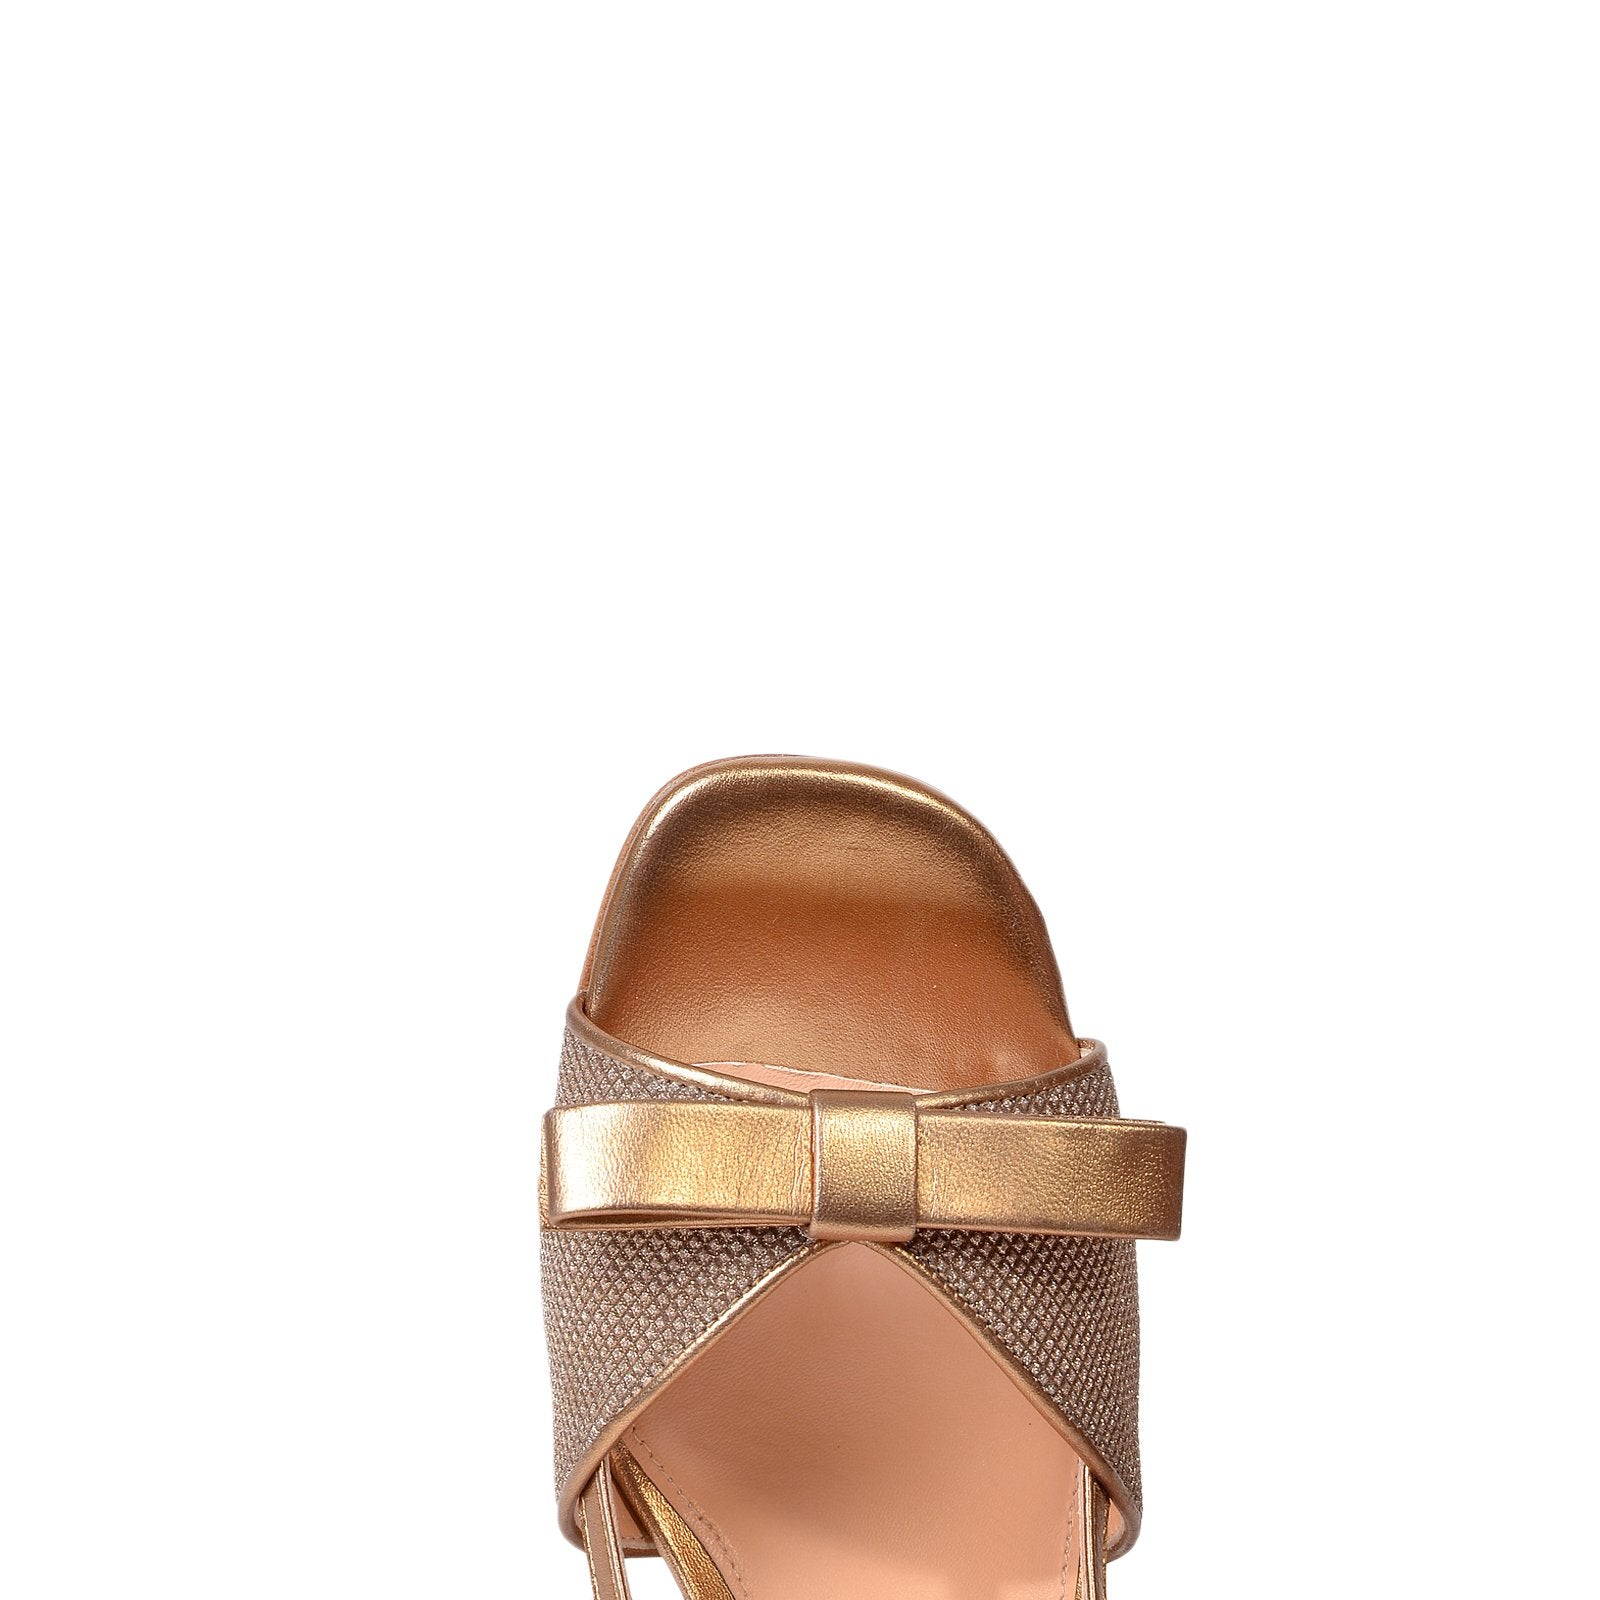 Luxor Bow Glitter Sandals  Heels 1103/Gold - 8